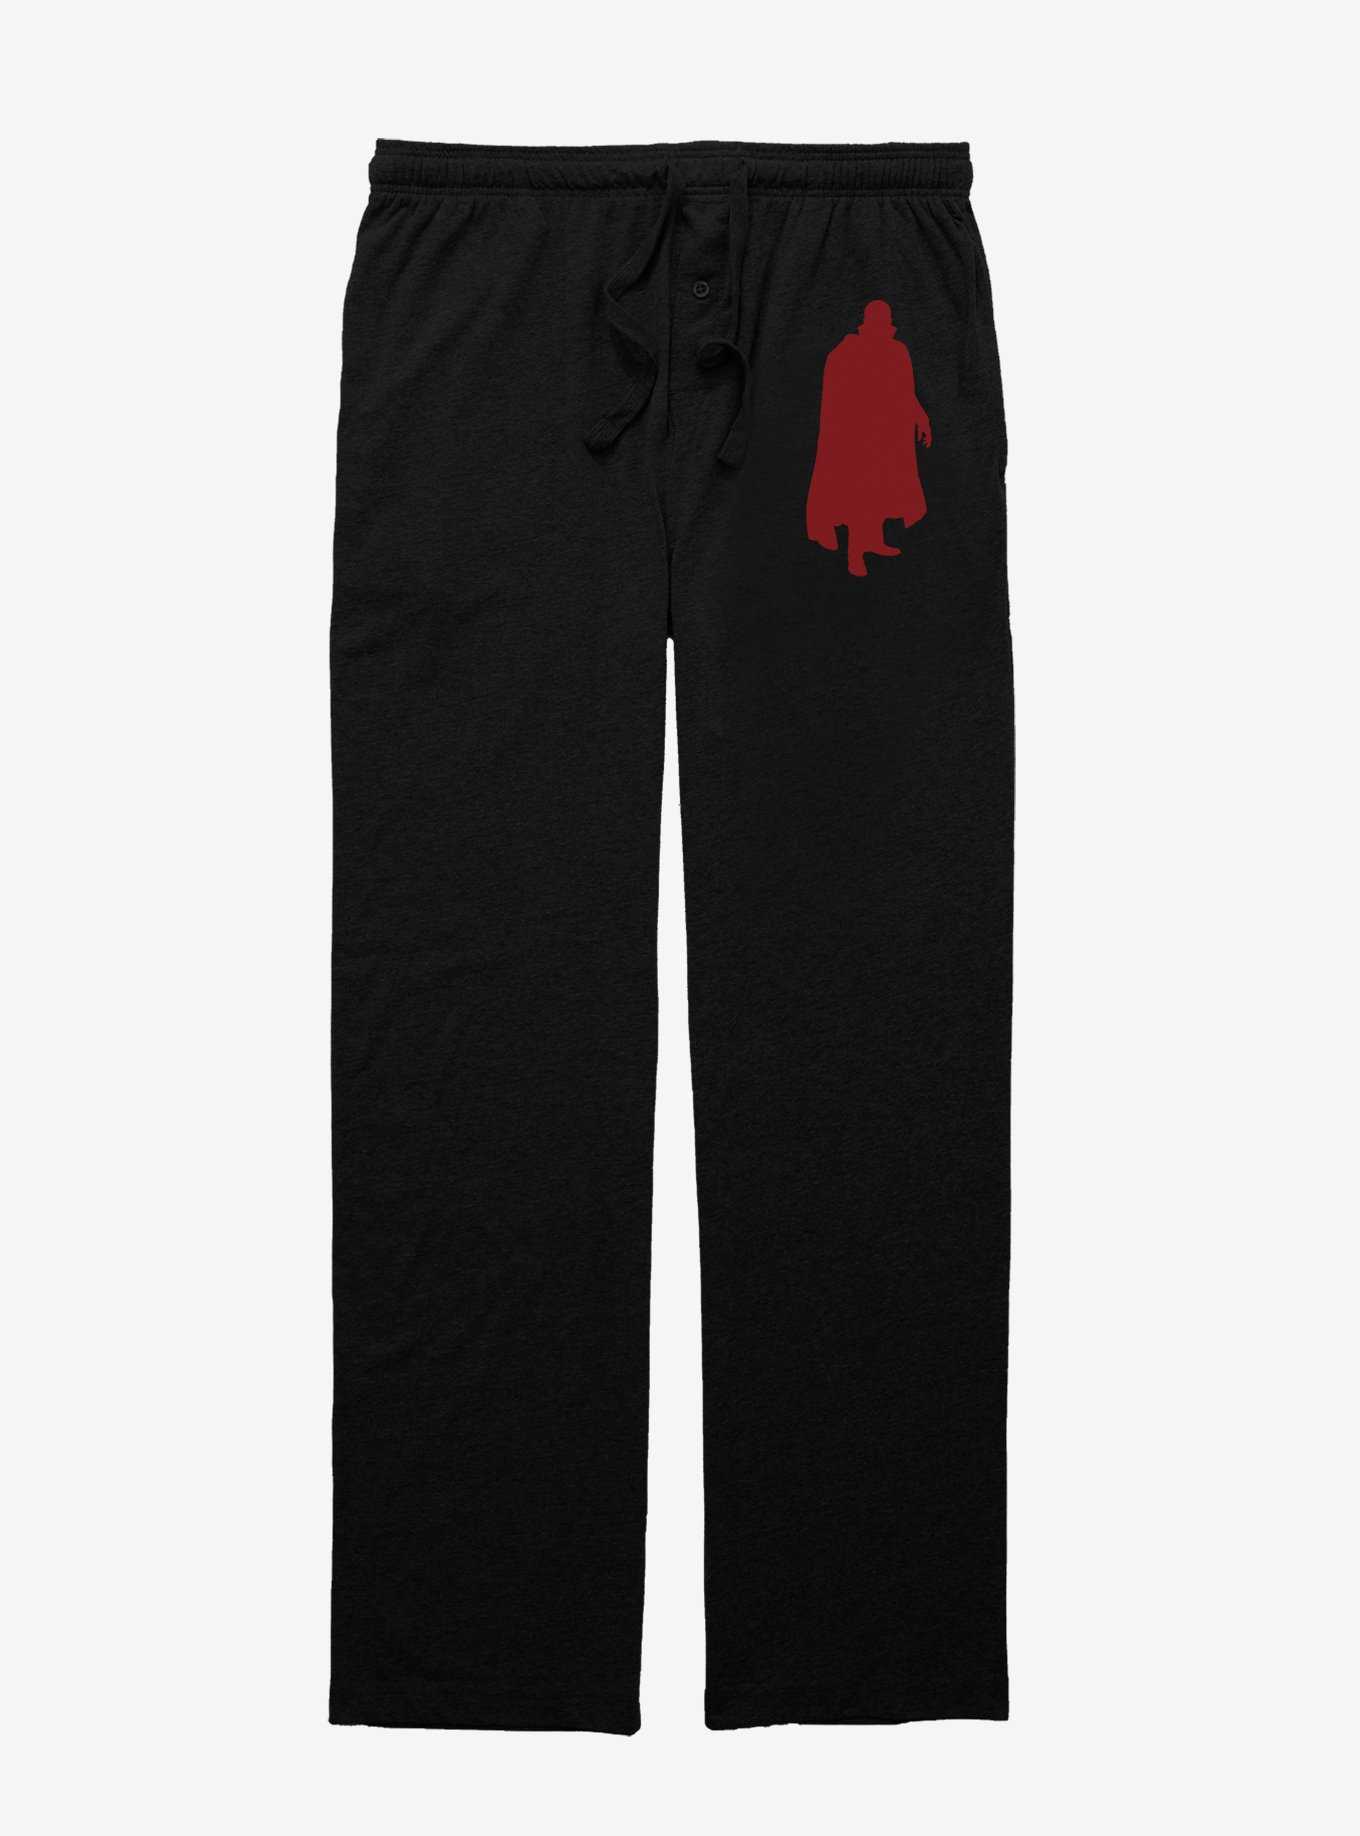 Dracula Silhouette Pajama Pants, , hi-res